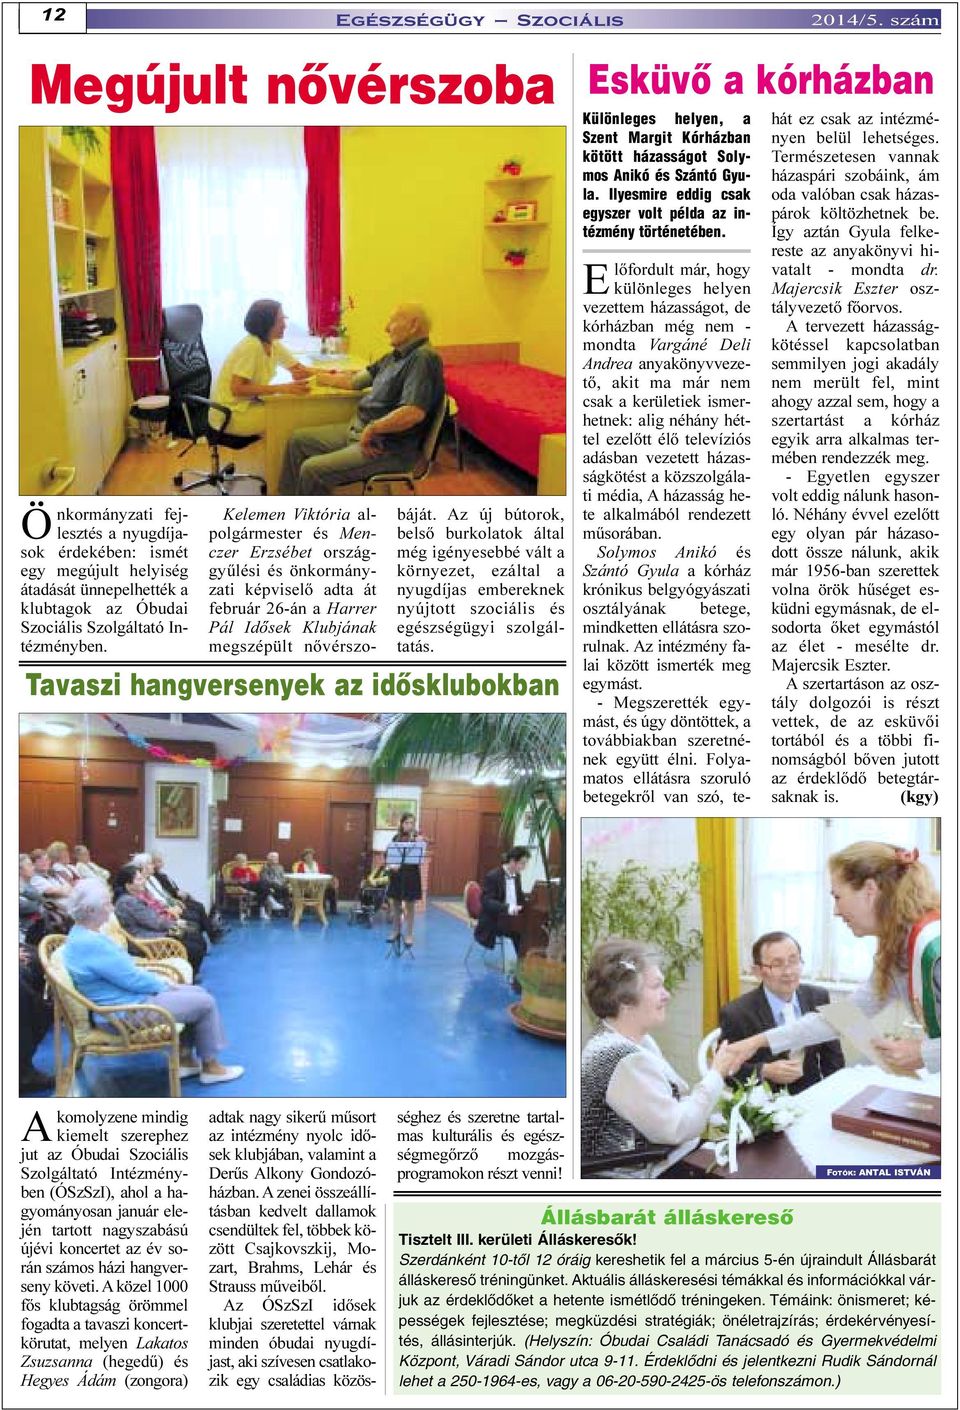 Az új bútorok, belsõ burkolatok által még igényesebbé vált a környezet, ezáltal a nyugdíjas embereknek nyújtott szociális és egészségügyi szolgáltatás. Tavaszi hangversenyek az idõsklubokban 2014/5.